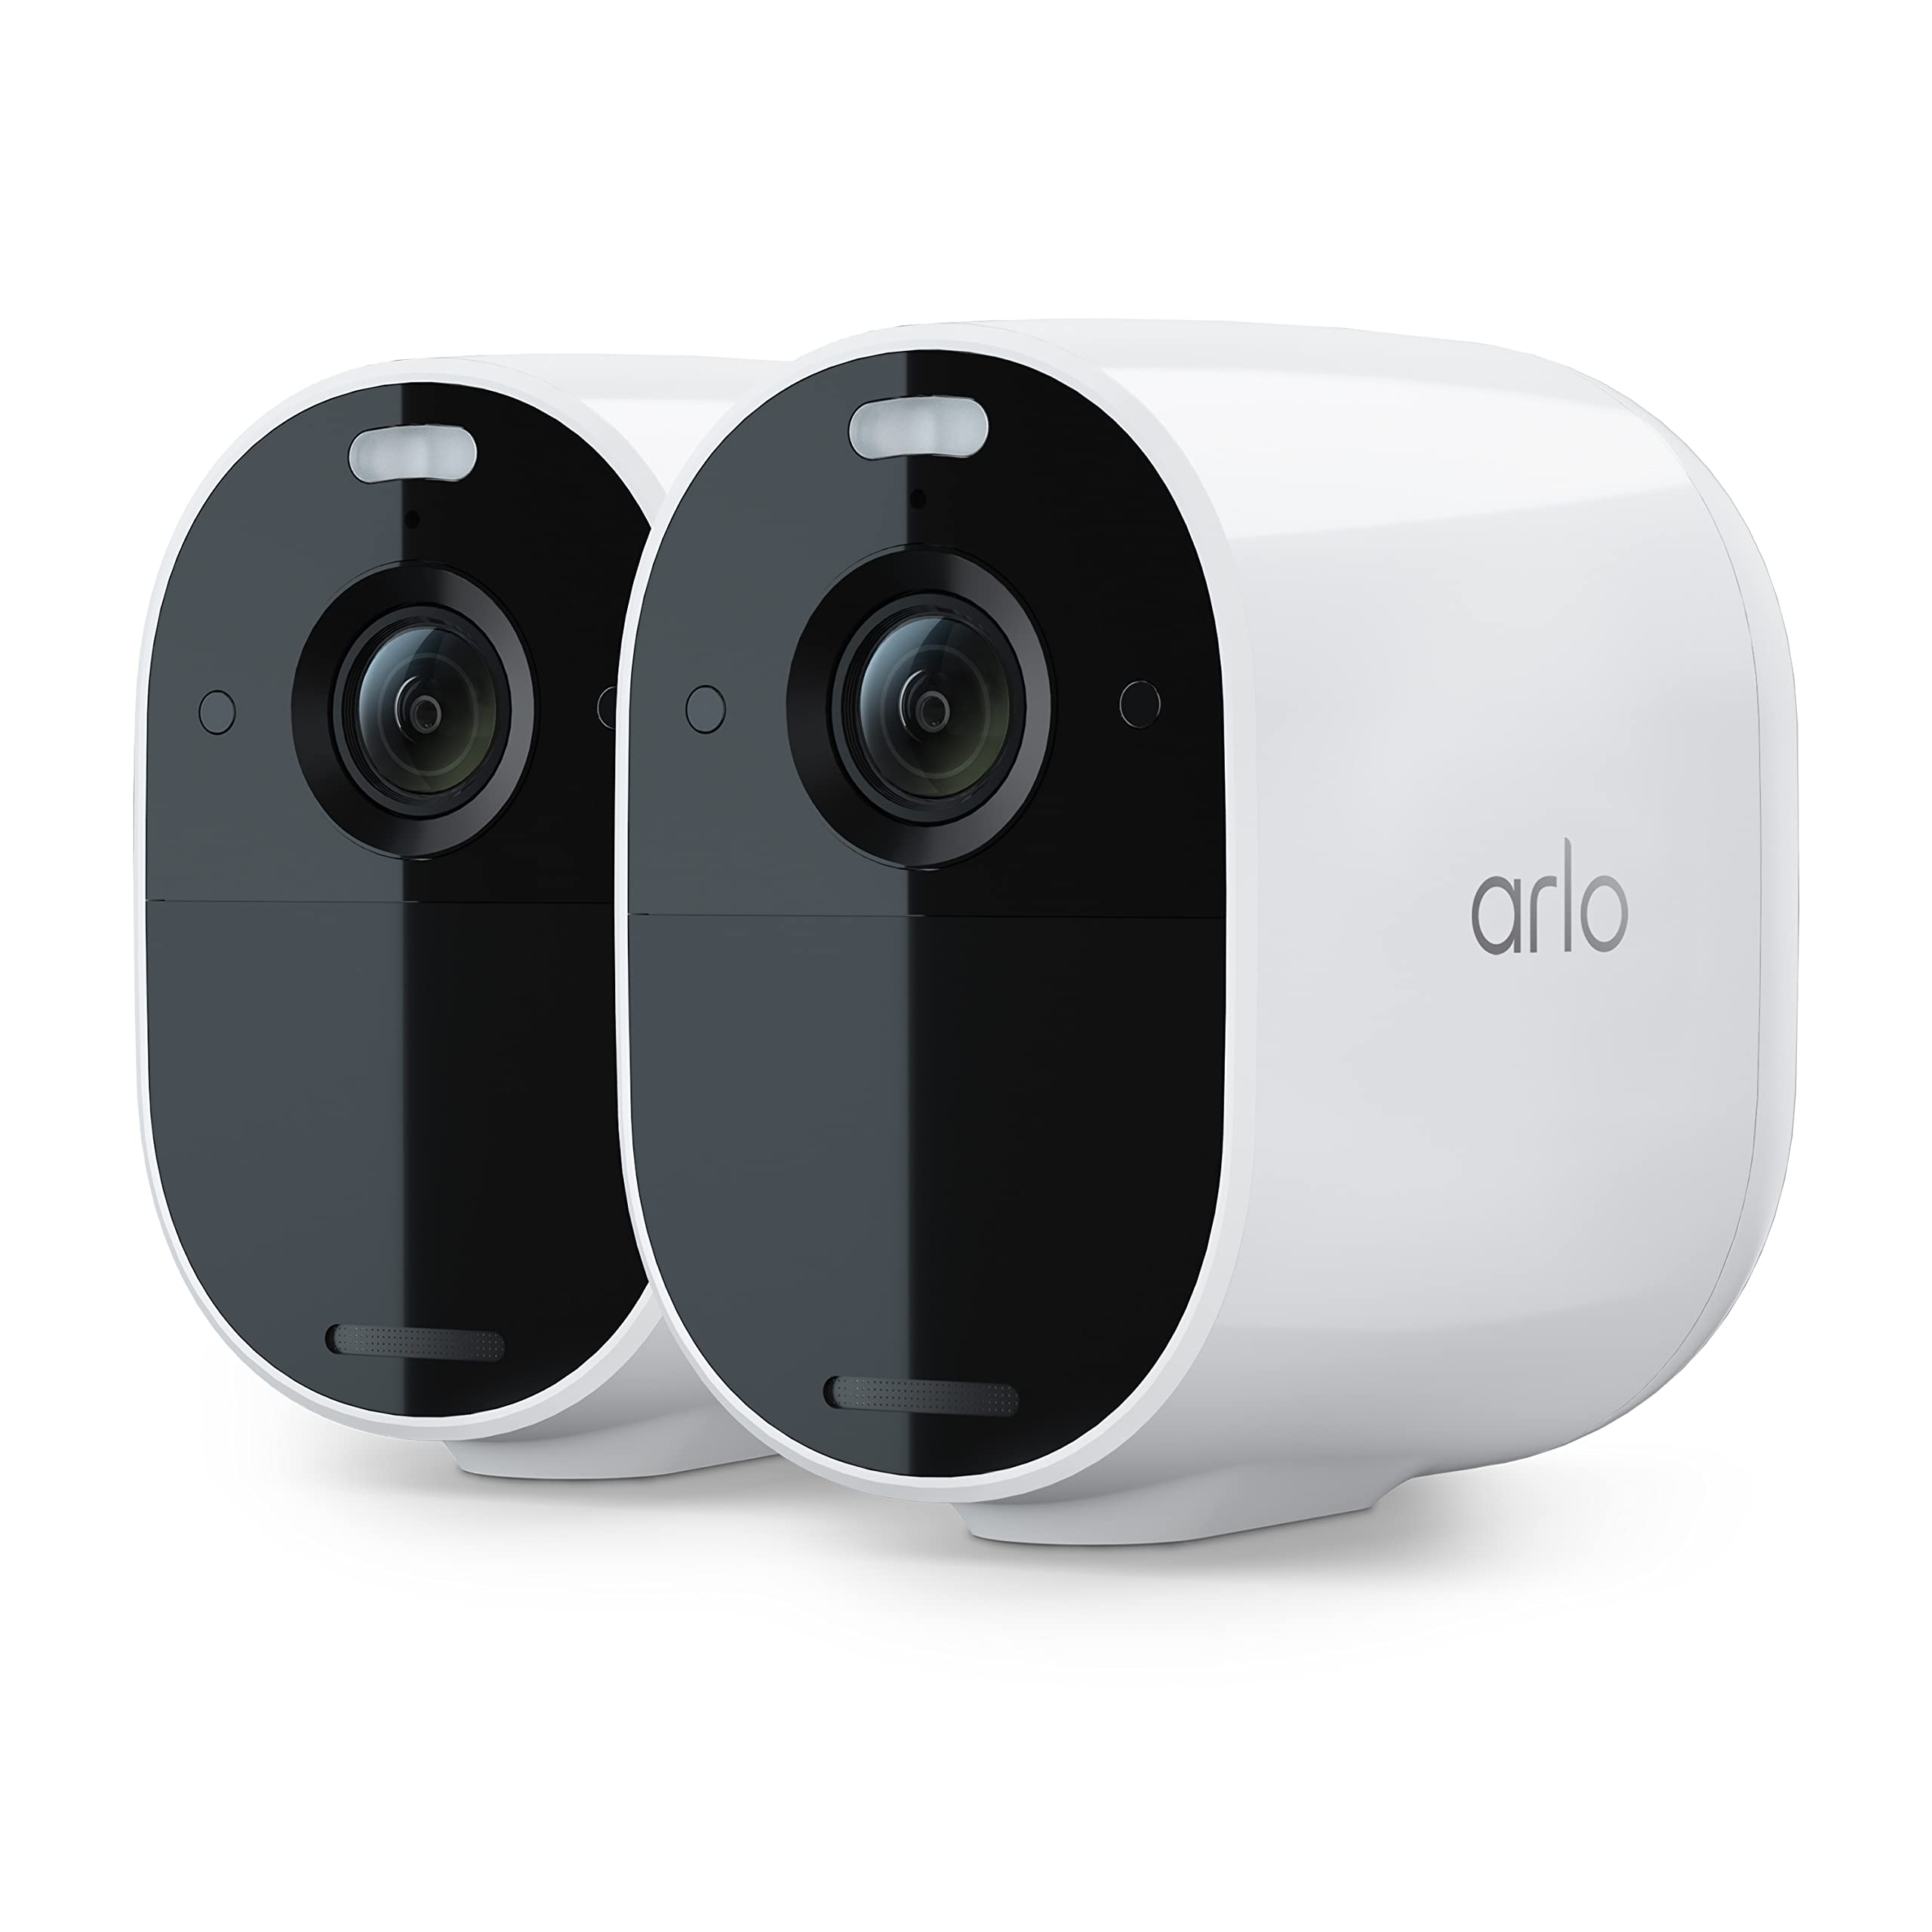 Chào mừng đến với Arlo Essential Spotlight Camera! Nó sẽ bảo vệ ngôi nhà của bạn với hệ thống an ninh hiện đại nhất. Với Arlo Essential Spotlight Camera bạn có thể giám sát nhà của mình từ xa và an tâm đi làm hay đi du lịch mà không phải lo lắng về an ninh. Click vào để xem hình ảnh và khám phá thêm về sản phẩm này nhé!